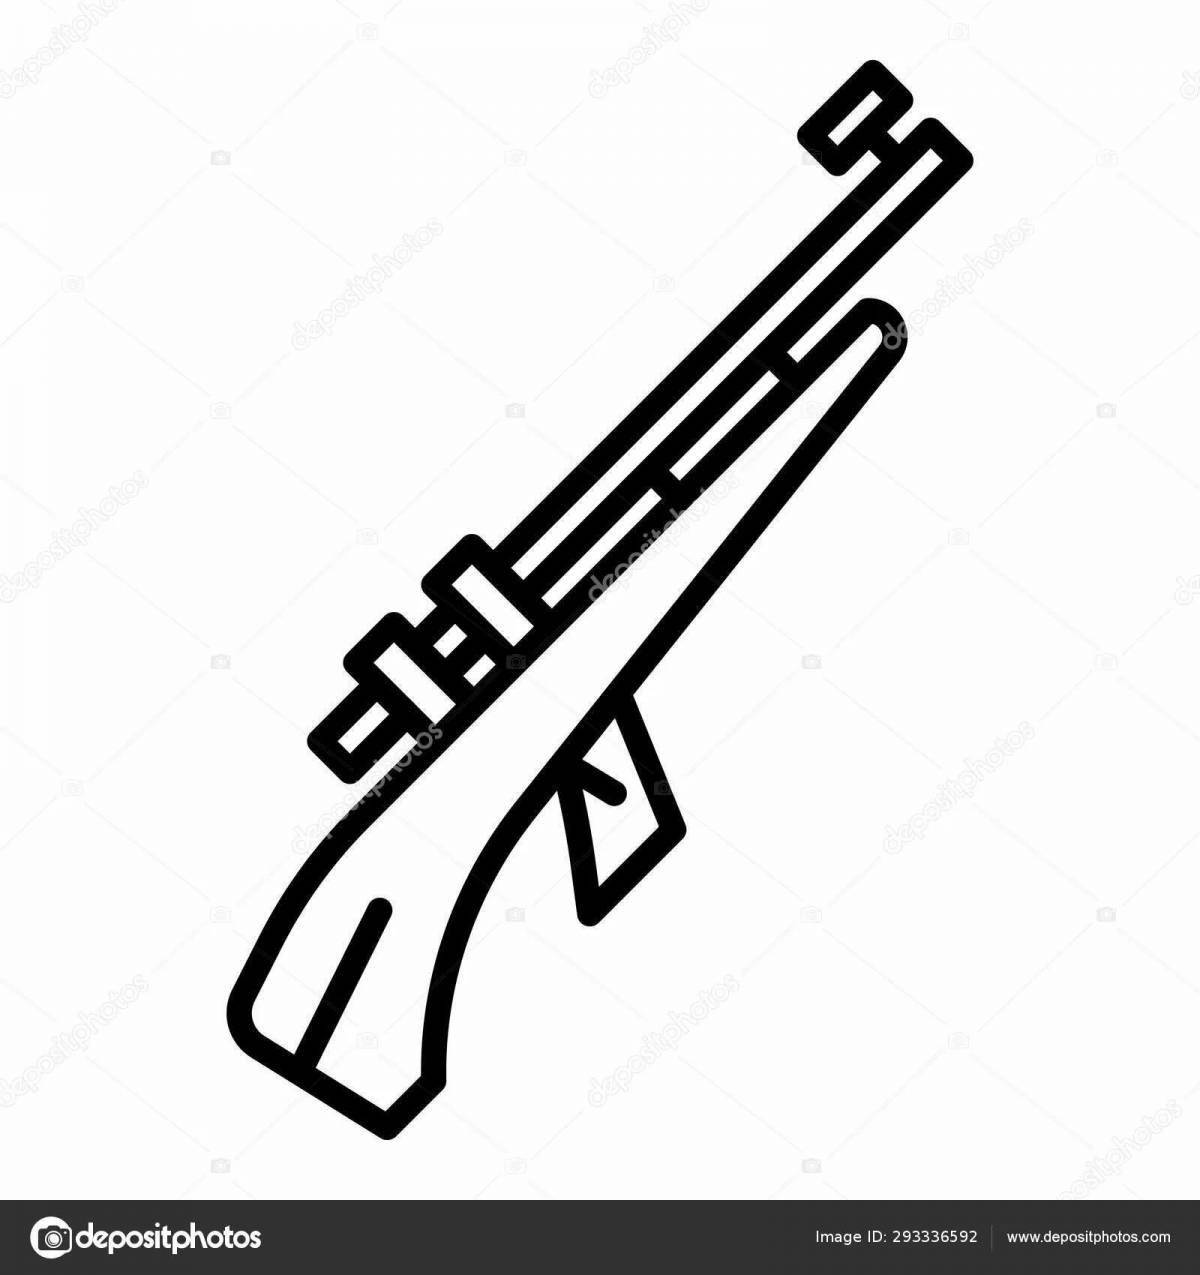 Children's rifle #2